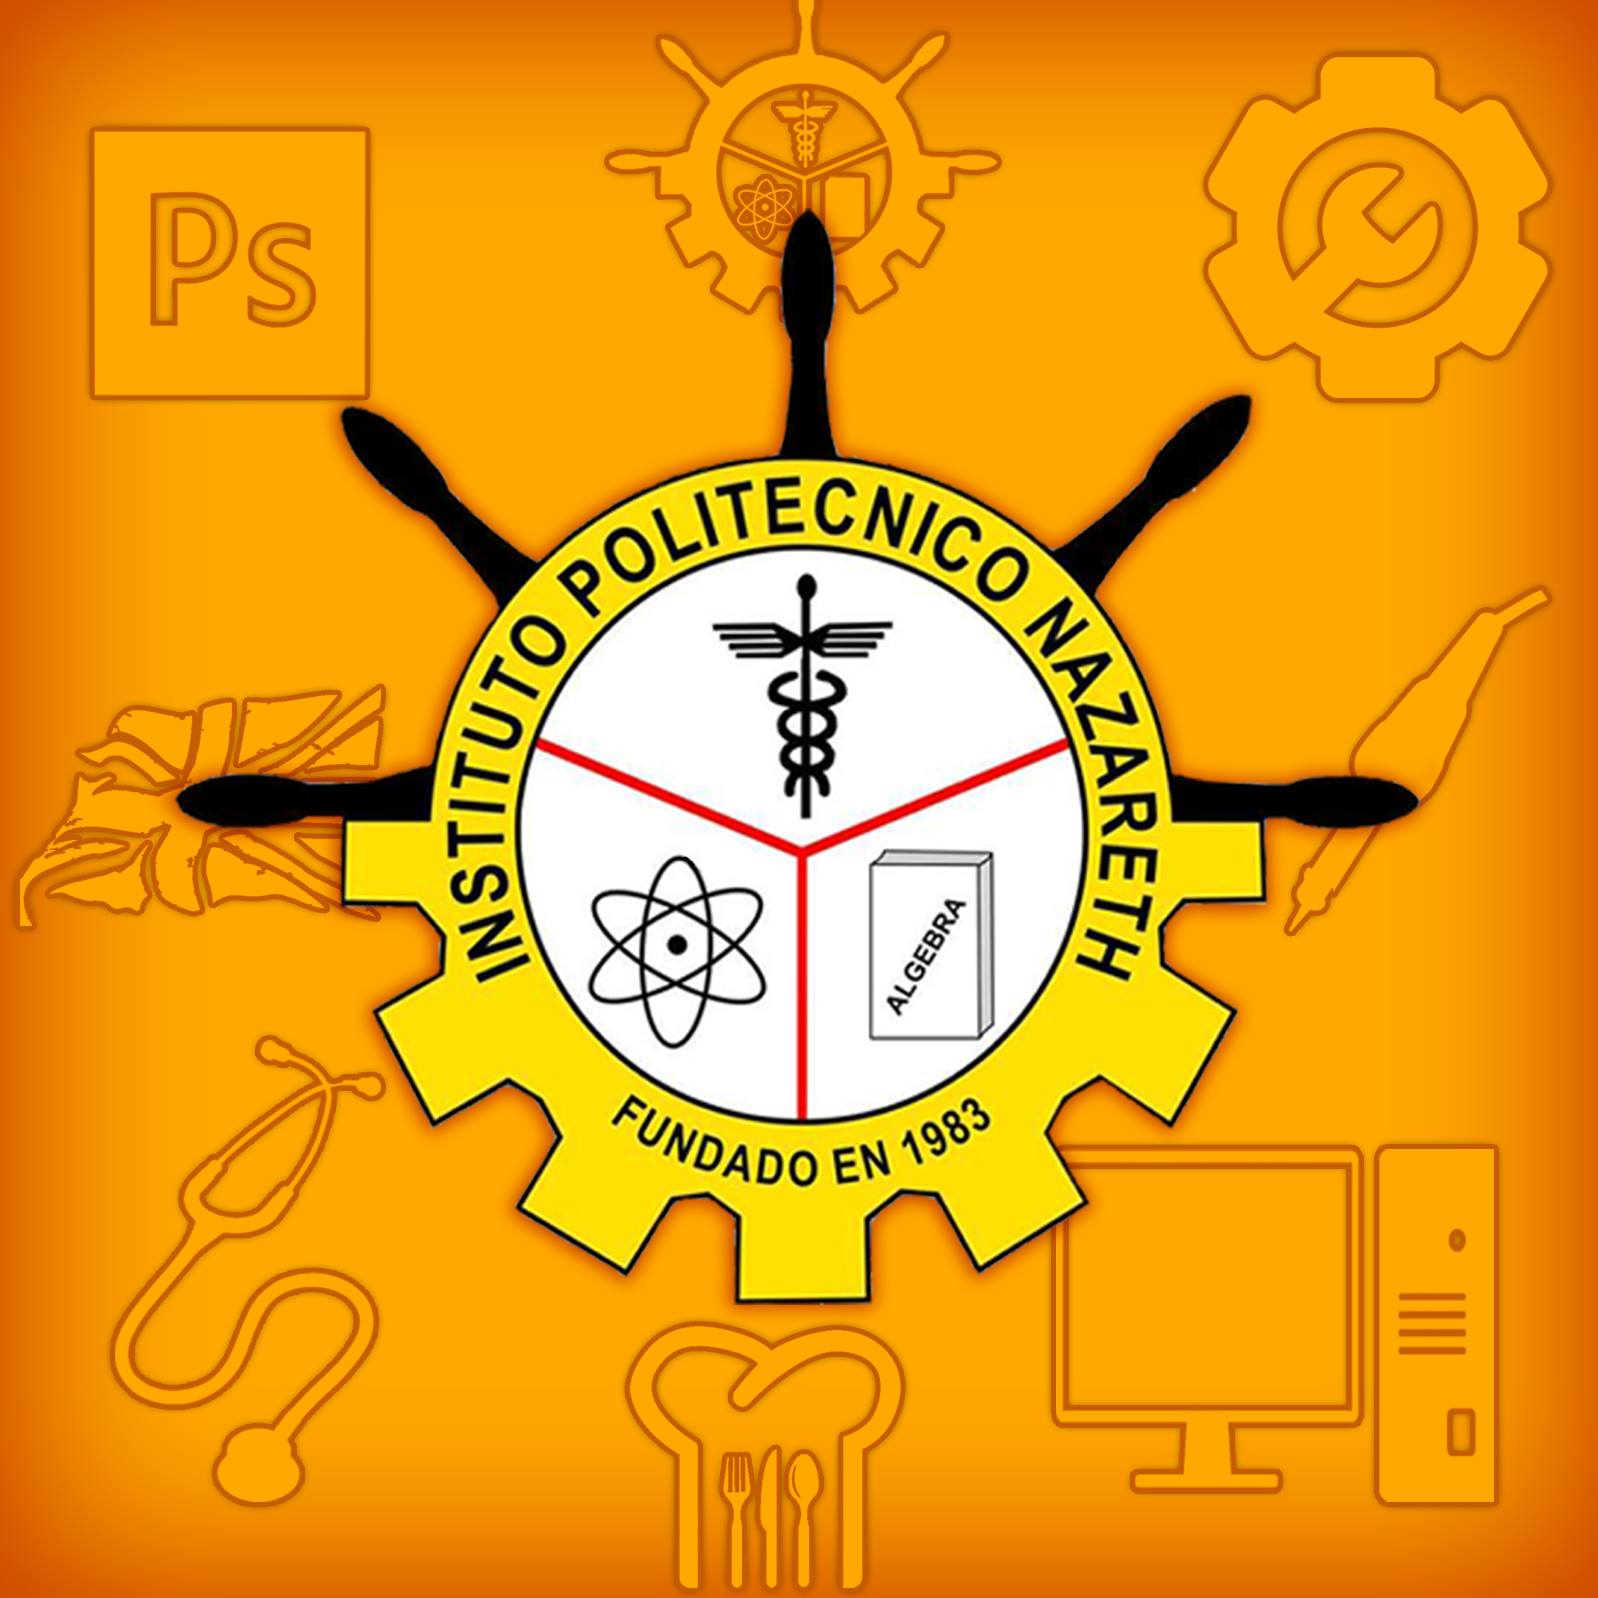 Polytechnic Institute "Nazareth" logo